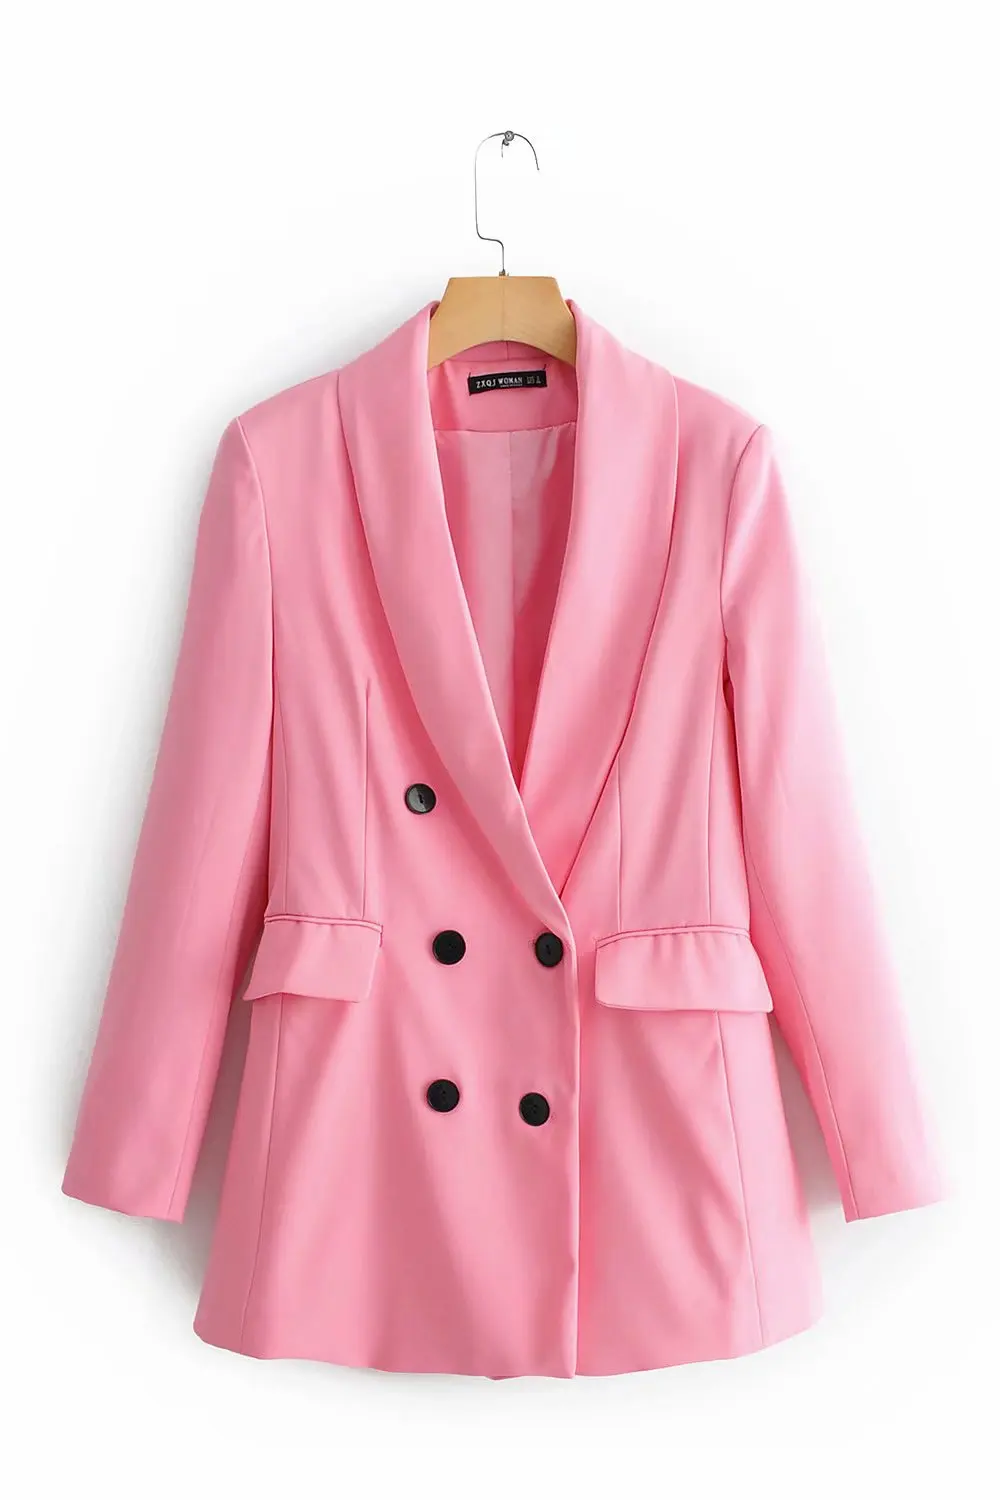 Aisiyibushi 2 шт. брюки наборы для женщин летний офисный костюм двубортный женский костюм пиджак комплект из двух частей Блейзер Женский розовый костюм - Цвет: Suit jacket